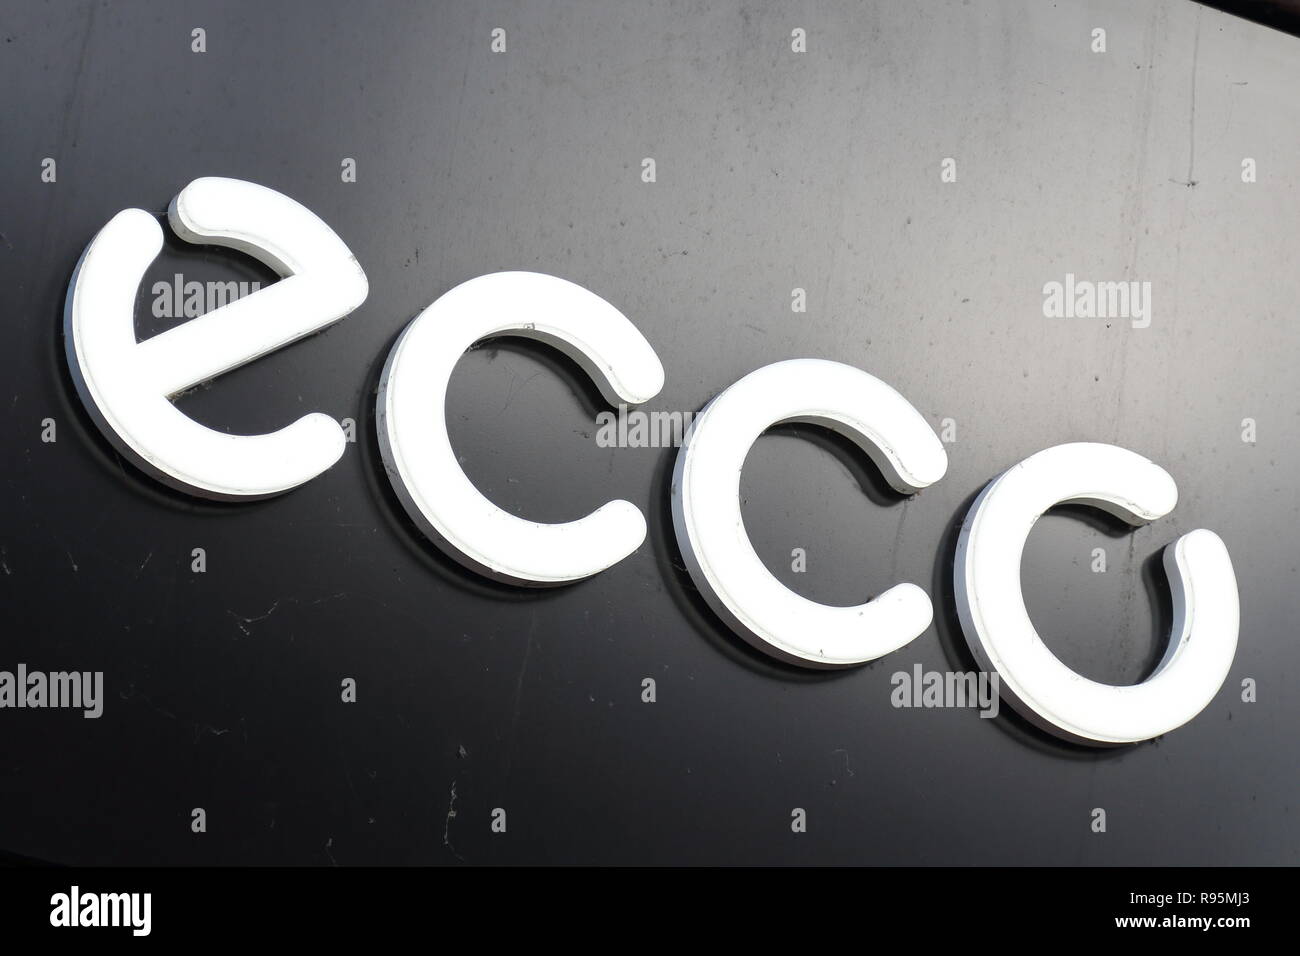 Ecco logo above shop Stock Photo - Alamy